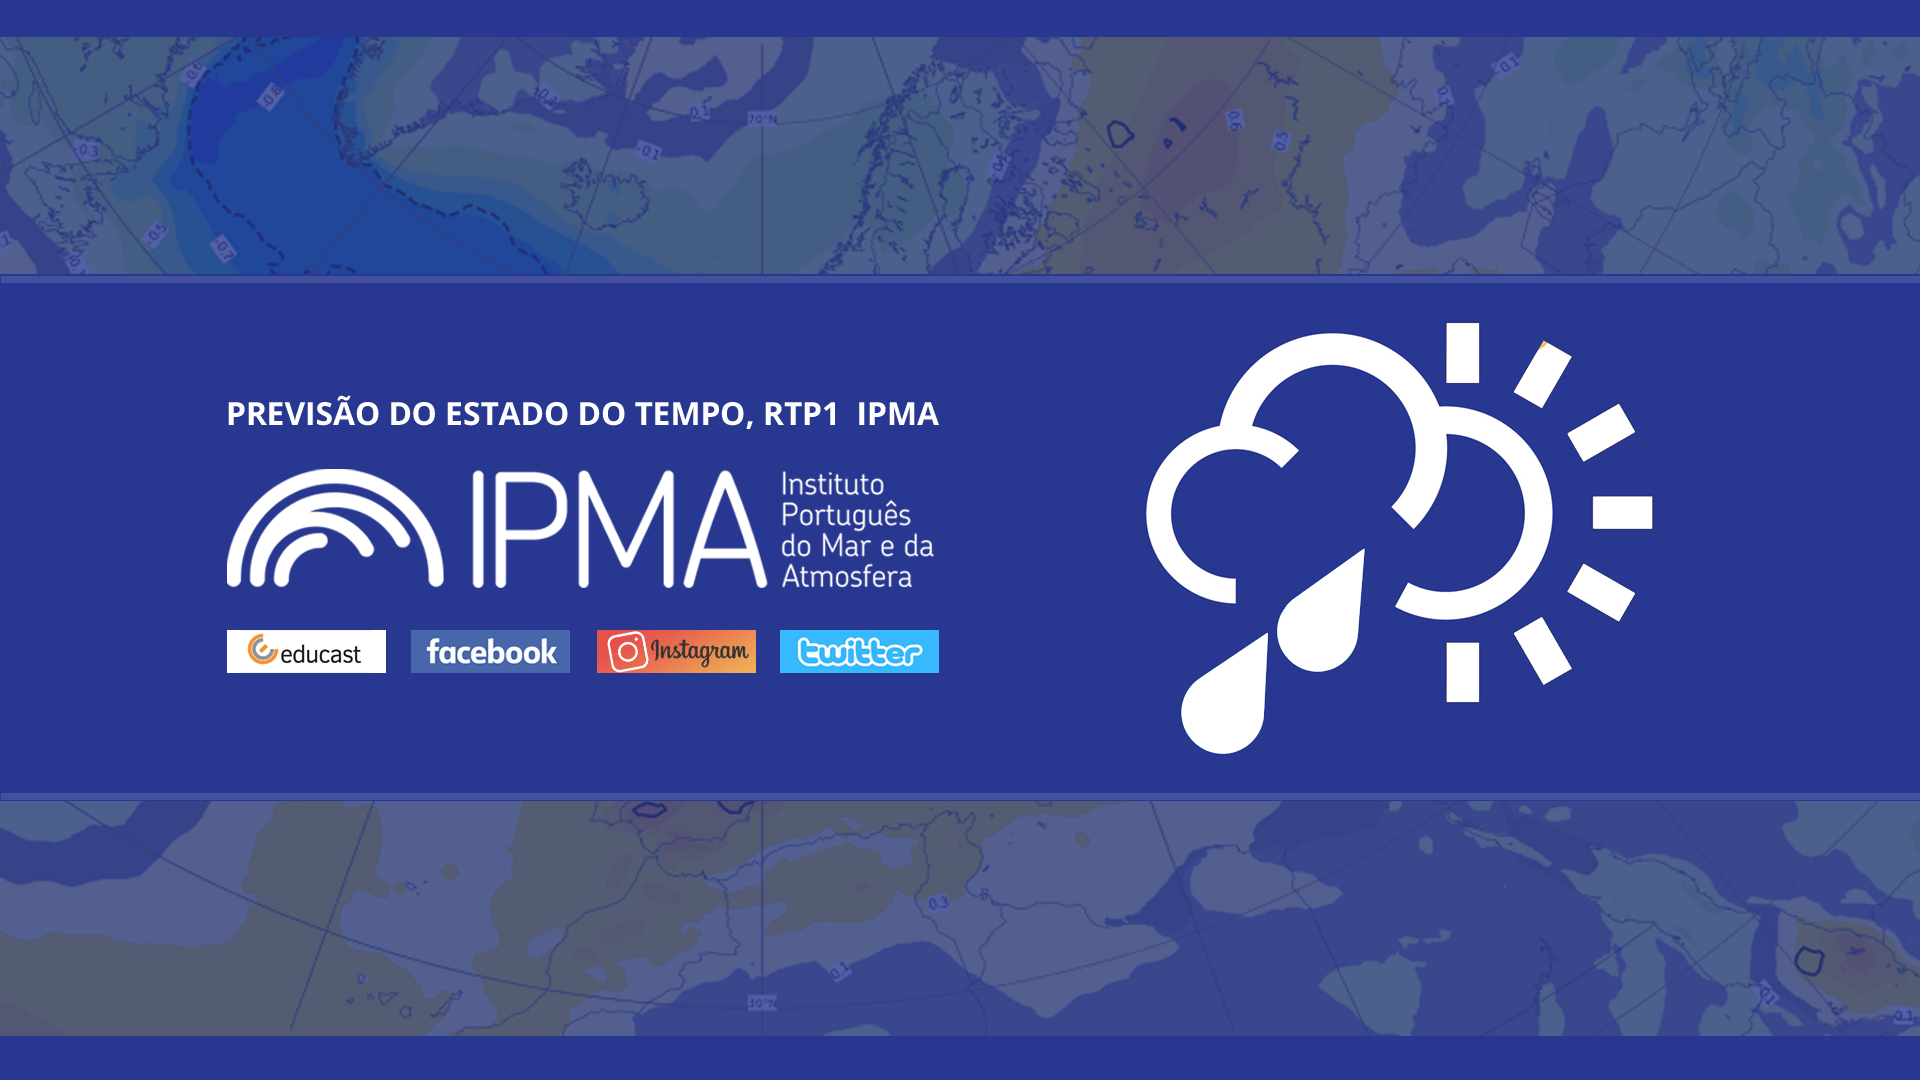  Previsão do estado do tempo, RTP1, 14-02-2022, IPMA.